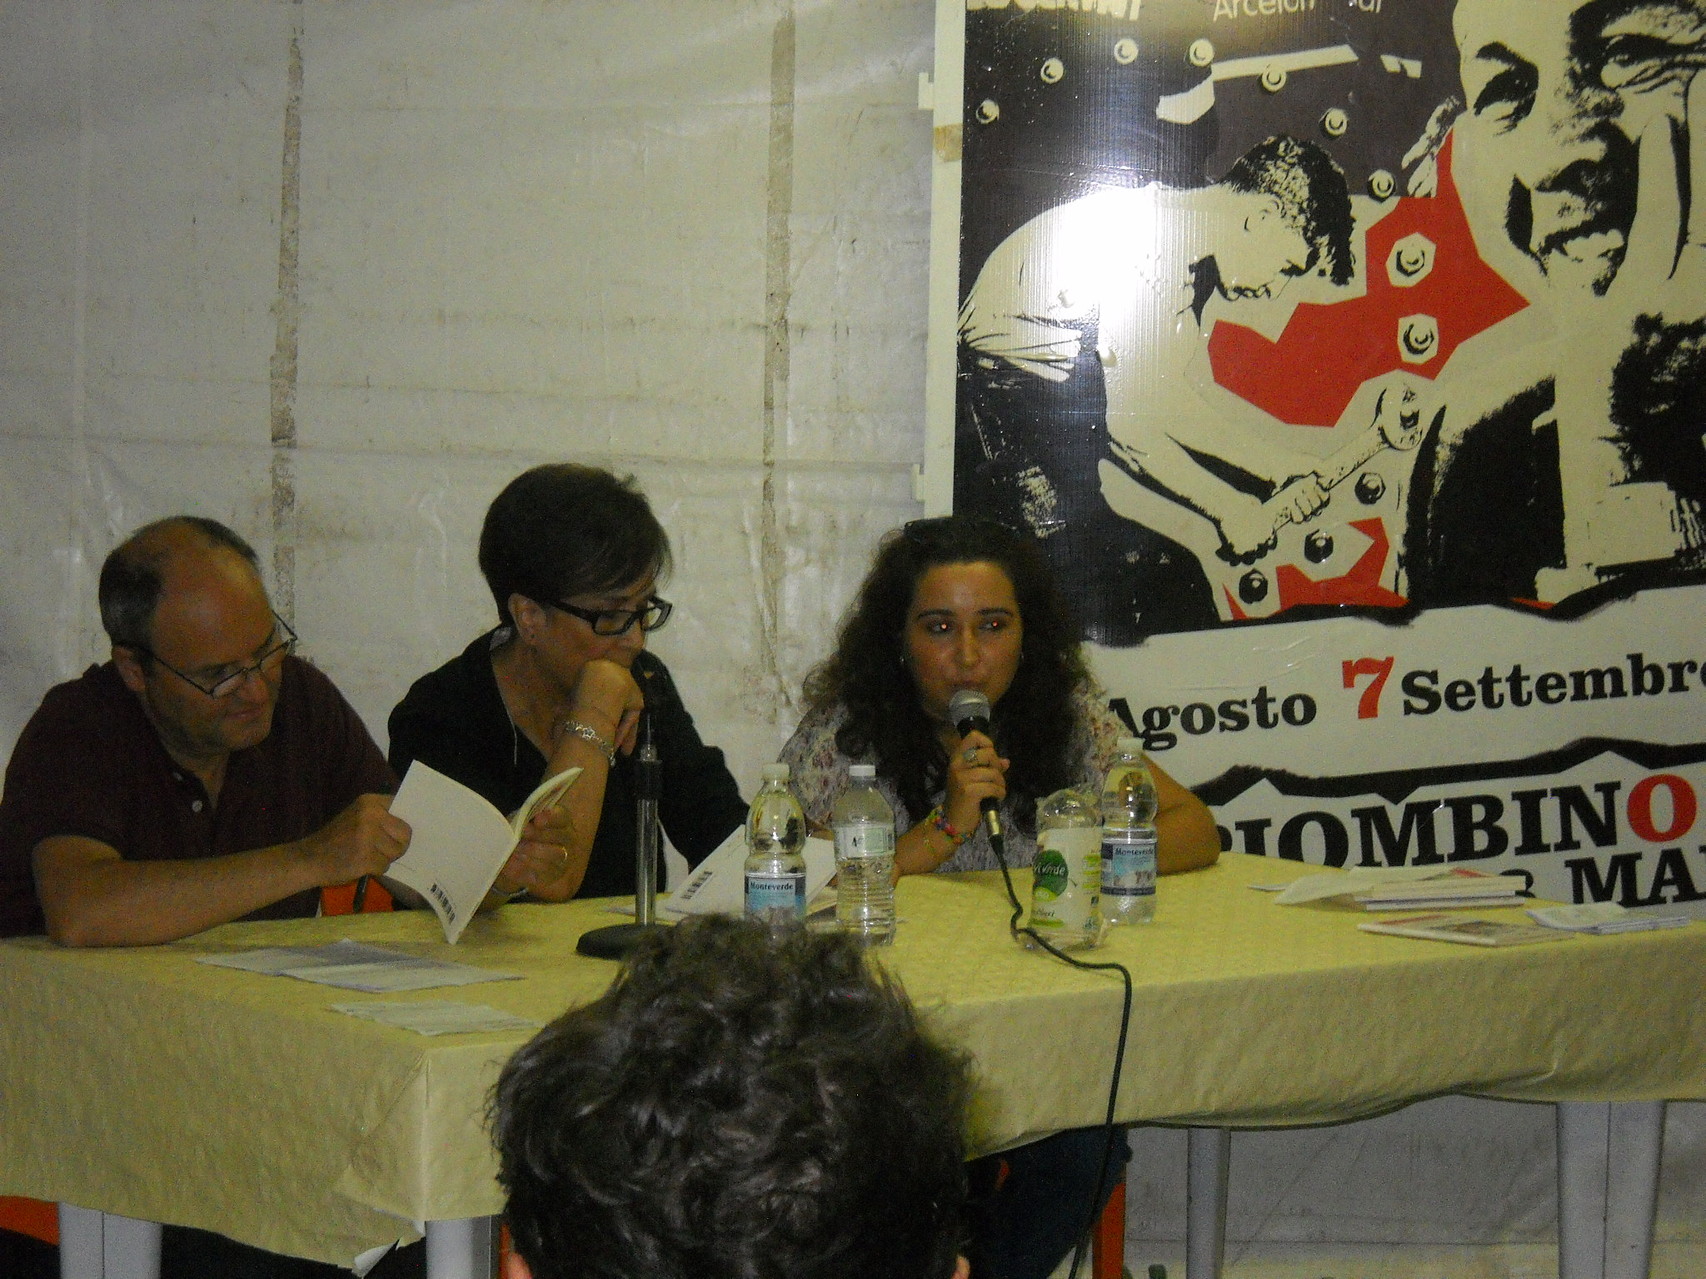  L'Assessore Claudio Capuano, l'Assessore Margherita di Giorgi e l'autrice Francesca Ghiribelli.